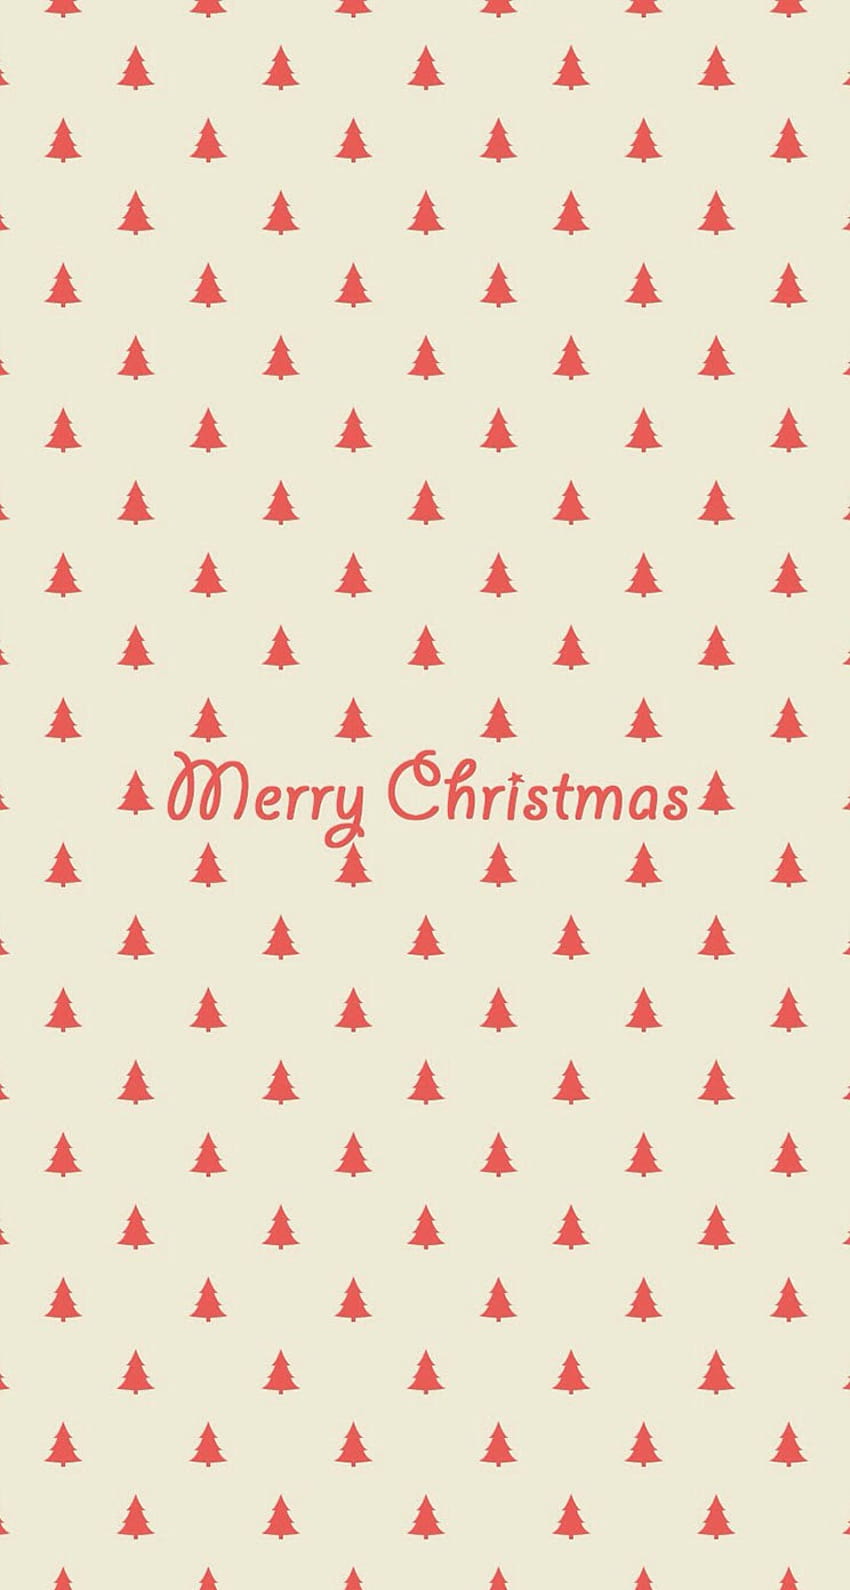 Sự đơn giản và tinh tế của mẫu áp phích với hình ảnh cây thông trang trí những đàn sao giữa không trung sẽ khiến bạn cảm thấy thoải mái và vui vẻ ngay từ cái nhìn đầu tiên. Hình nền Merry Christmas Simple Trees Pattern độc đáo này chỉ dành riêng cho đối tượng sử dụng iPhone 6 Plus thôi nhé!